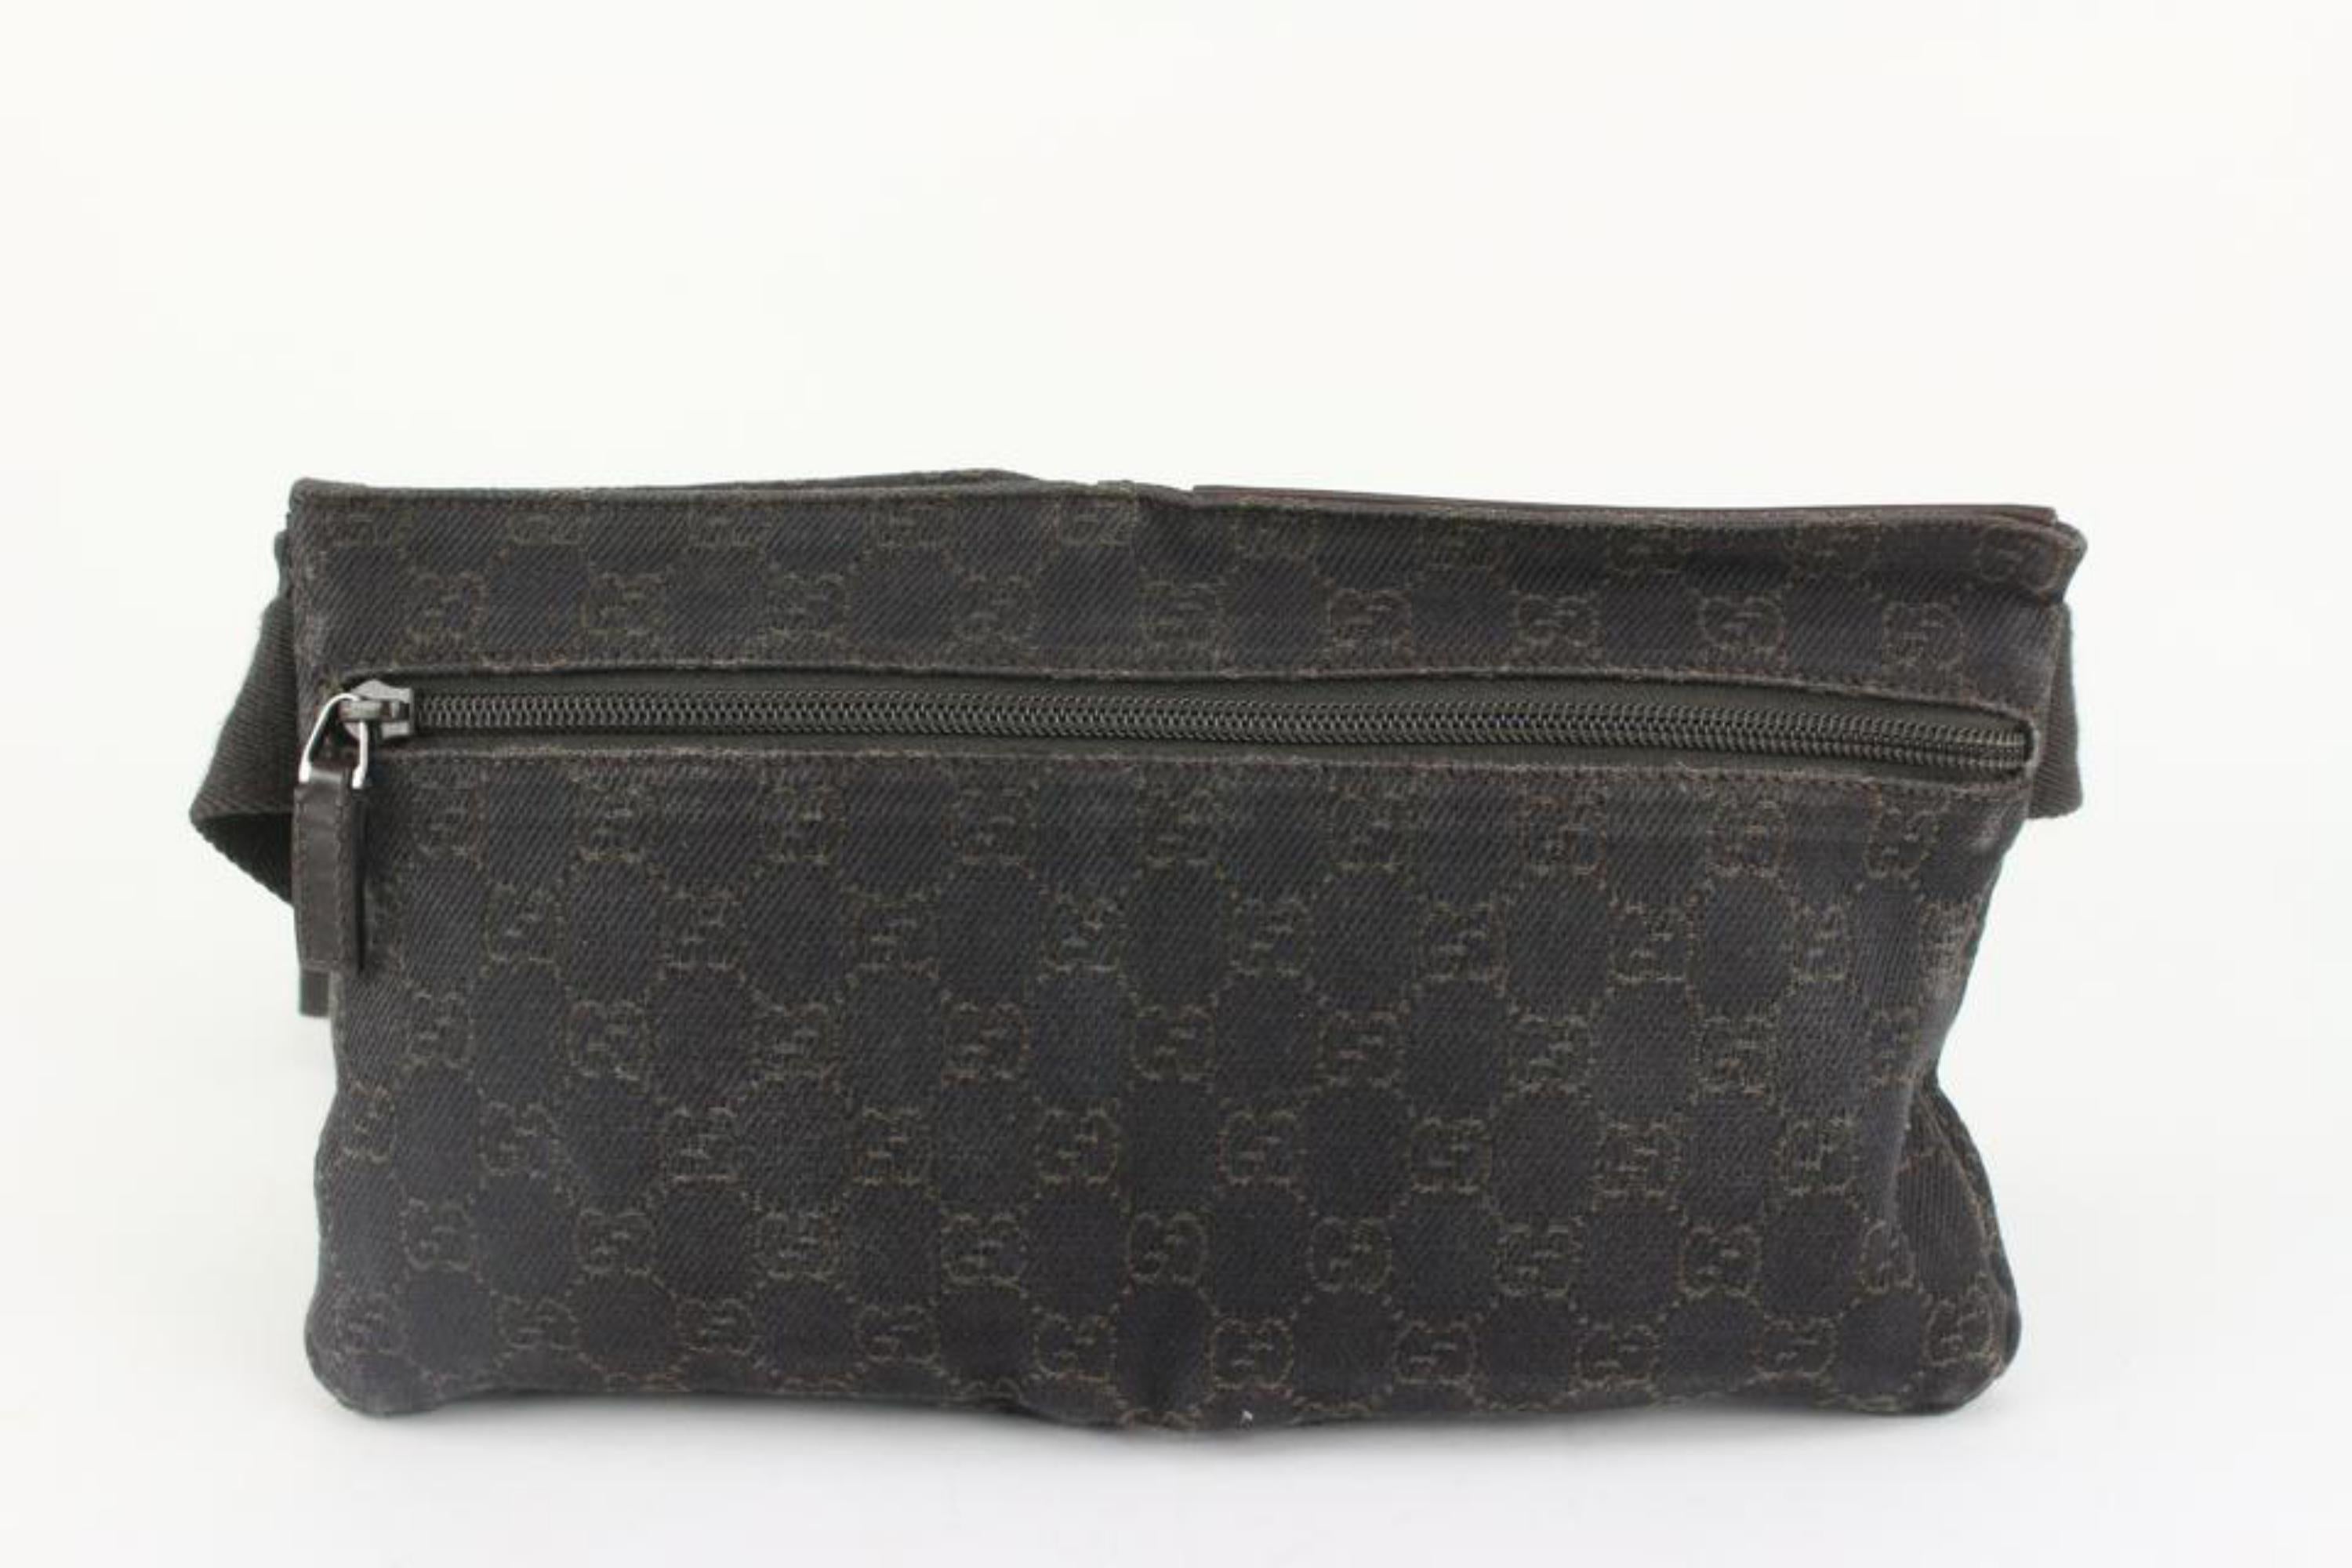 Gucci Dark Brown Monogram GG Belt Bag Waist Pack Bum Pouch 123g32 For Sale 5